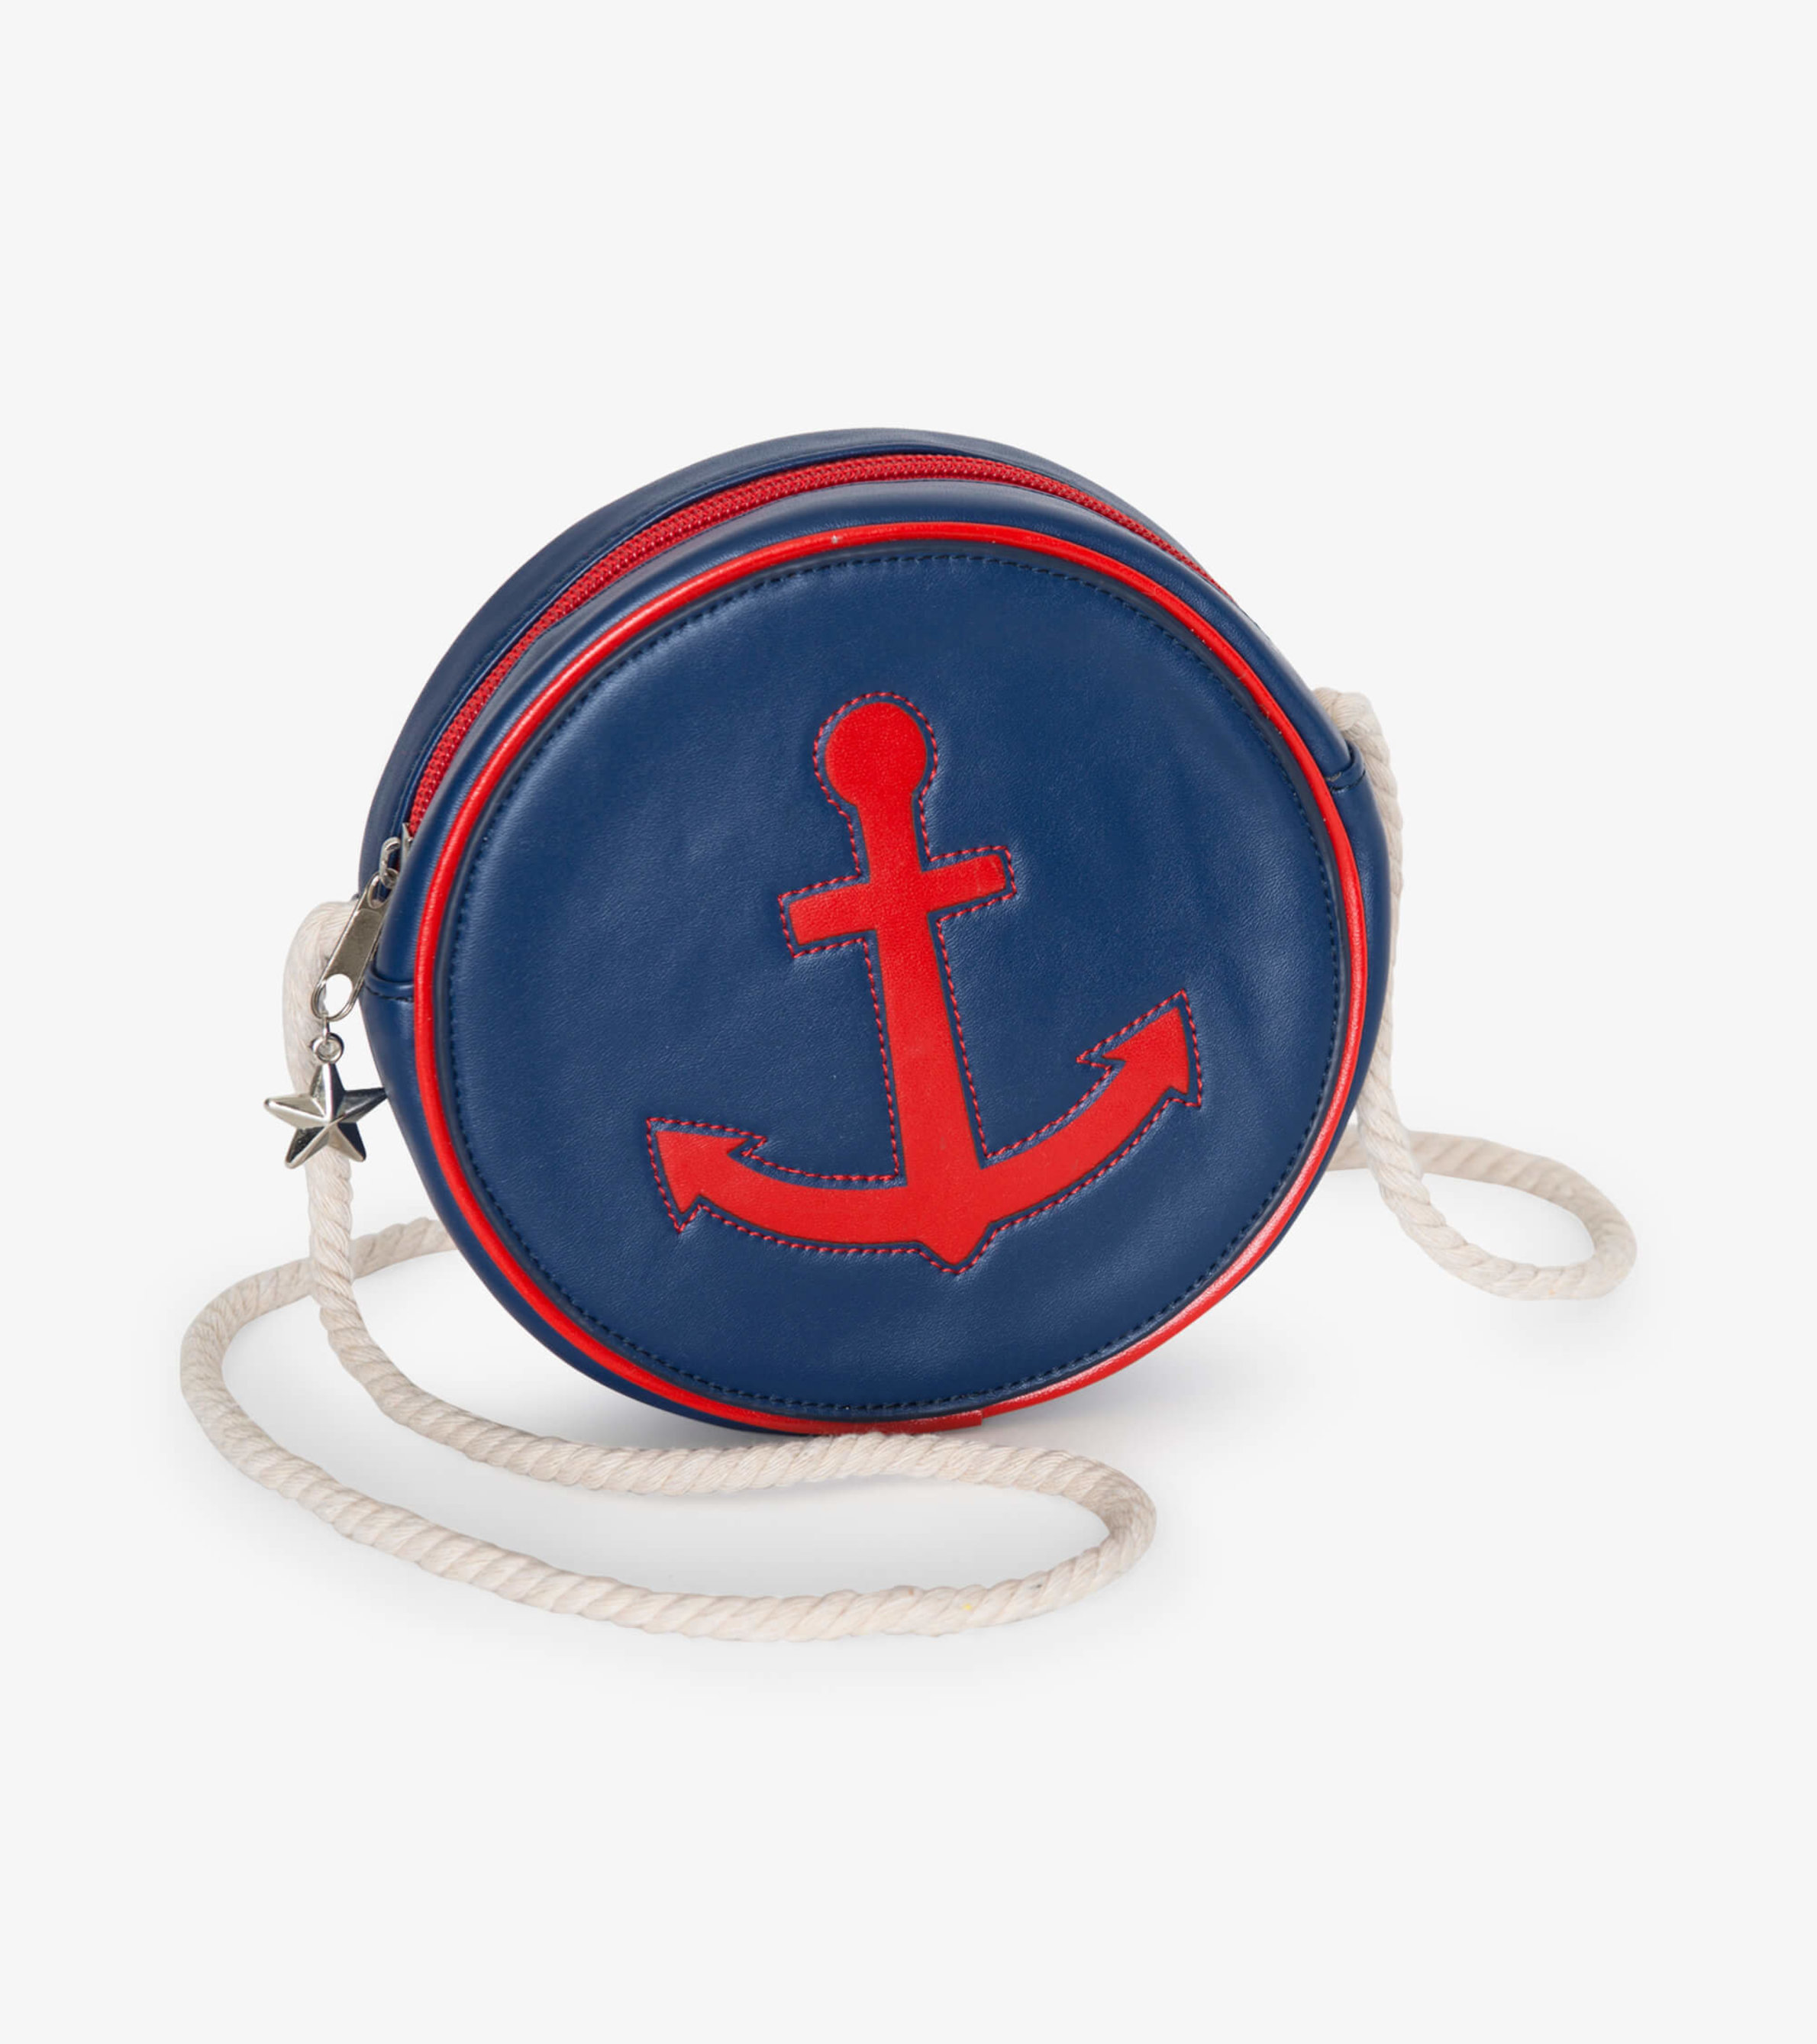 Nautical Crossbody Navy Anchor Nautical Handbag Purse 